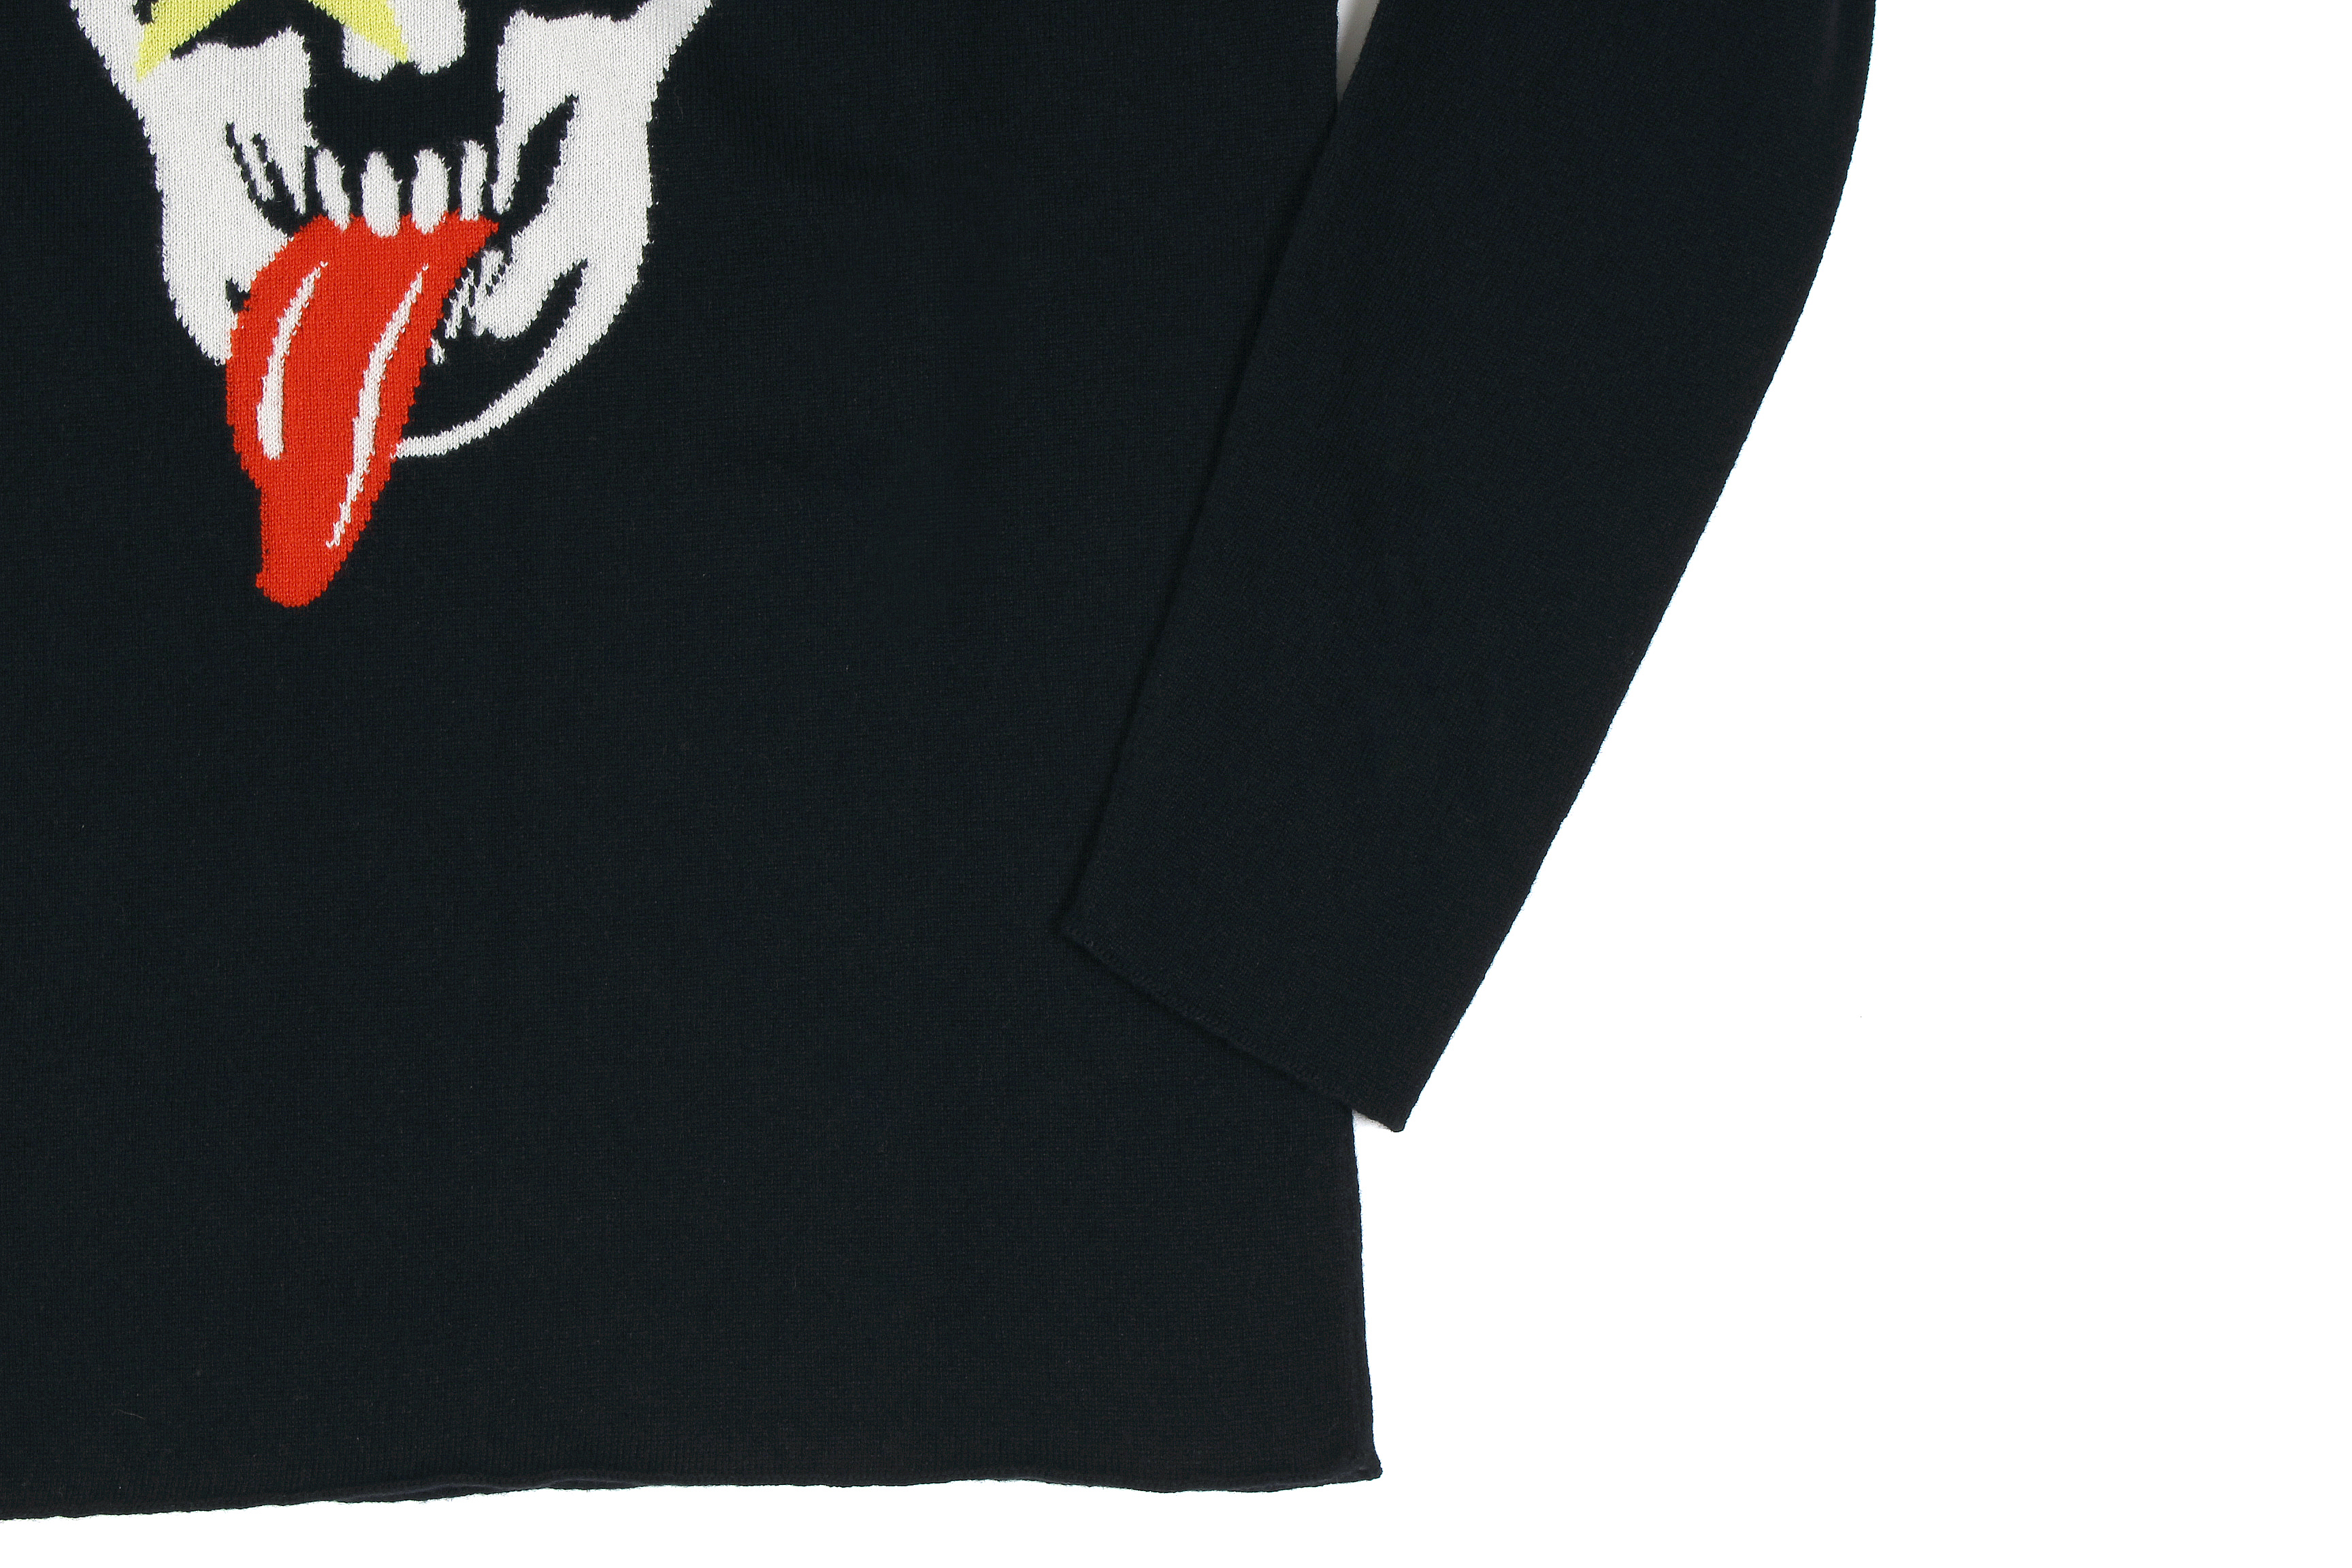 lucien pellat-finet(ルシアン ペラフィネ) KISS Skull Tongue Cashmere Sweater (キッス スカル タン カシミア セーター) インターシャ カシミア スカル セーター BLACK × NIVEOUS (ブラック × ホワイト) made in scotland (スコットランド製) 2020 春夏新作 愛知 名古屋 altoediritto アルトエデリット